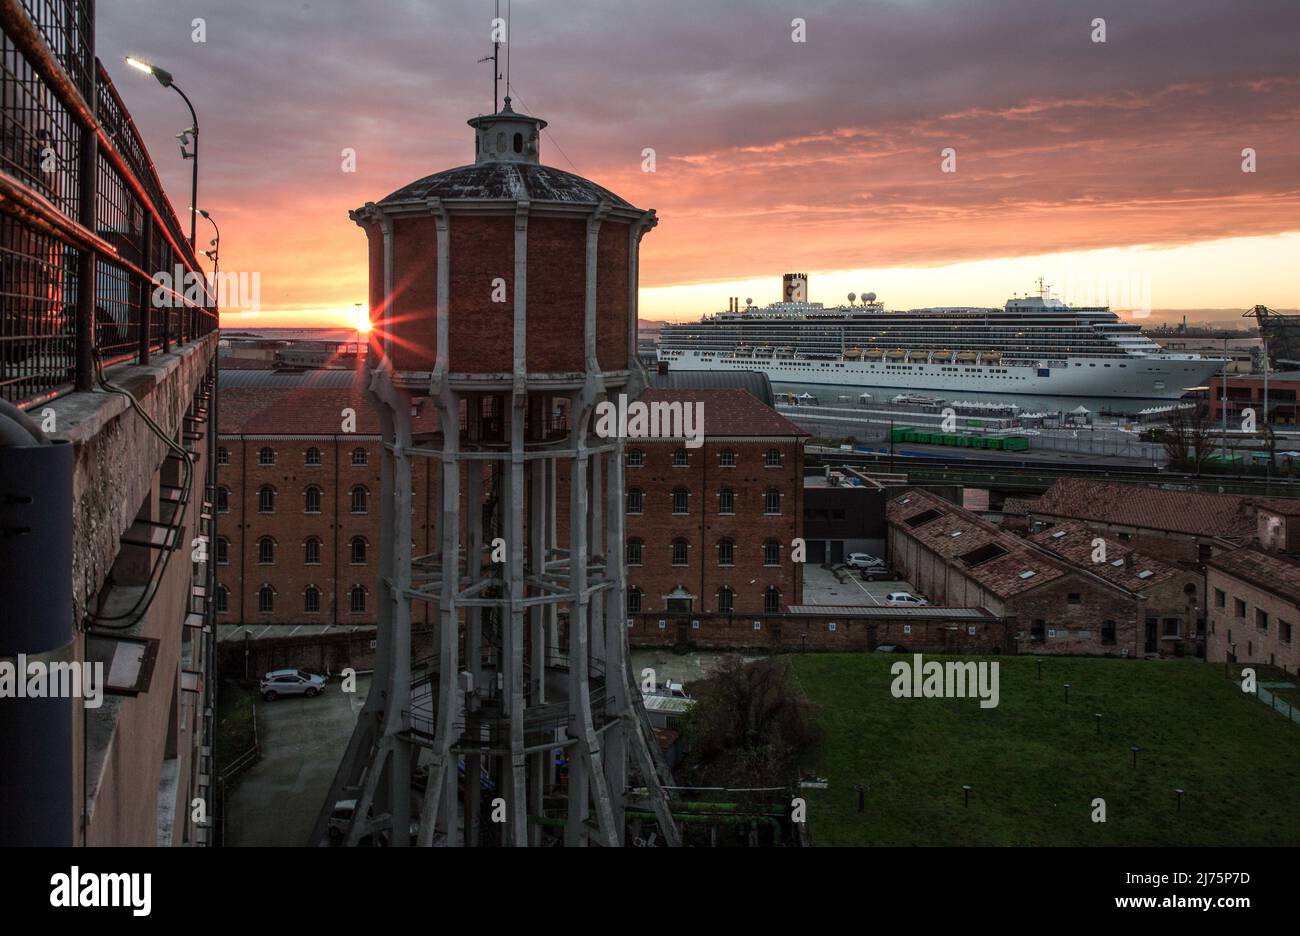 Italien Venedig Wasserturm bei der Garage San Marco -417 erb Mitte 20 JH hinten Kreuzfahrtschiff COSTA DELIZIOSA in der Stazione Marittima - Sonnenunt Foto de stock